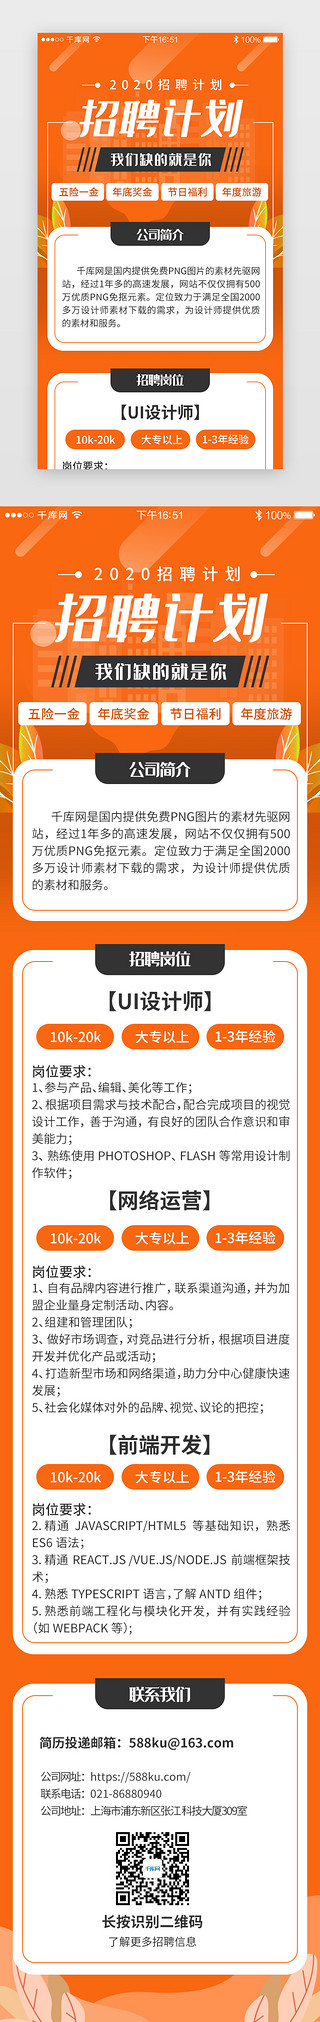 招聘文案UI设计素材_橙色系app招聘求职H5